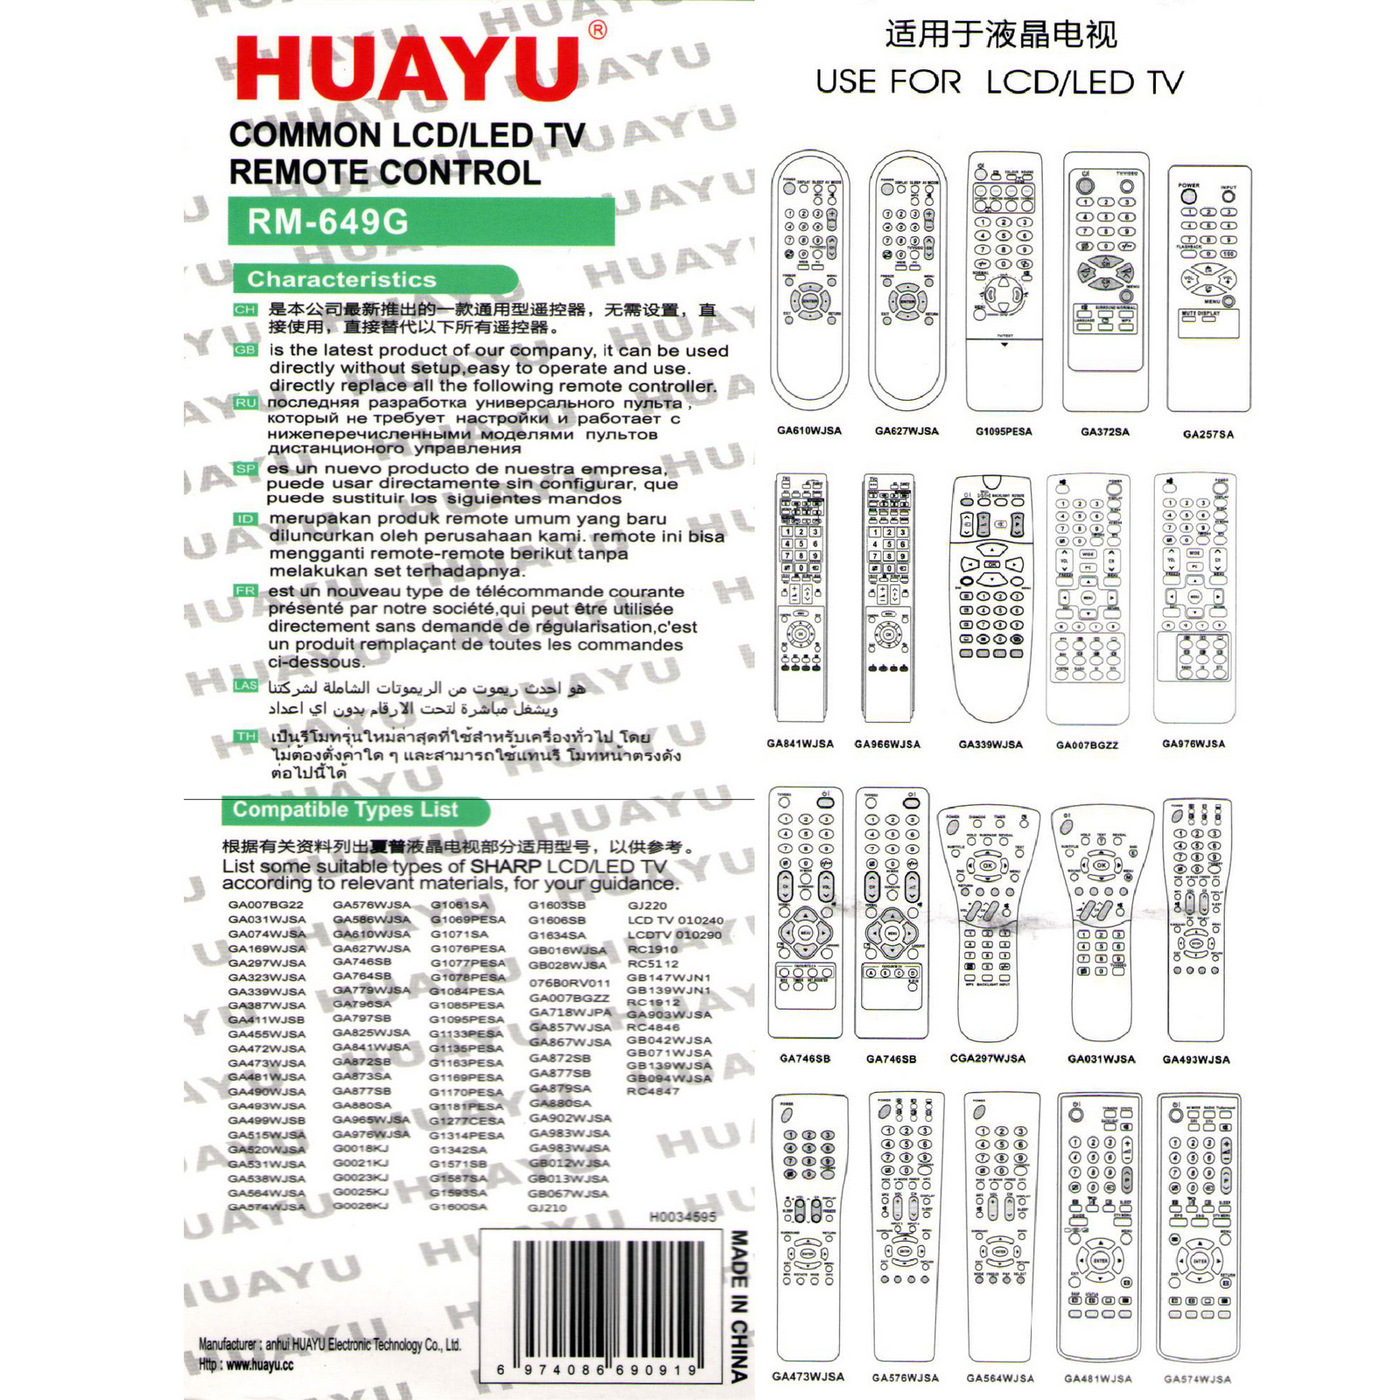 Телевизора huayu инструкция. Универсальный Sharp-RM-649g. Универсальный пульт Huayu RM-649g для телевизоров Sharp. Пульт Huayu RM 649g Назначение кнопок. Sharp RM-649g LCD.